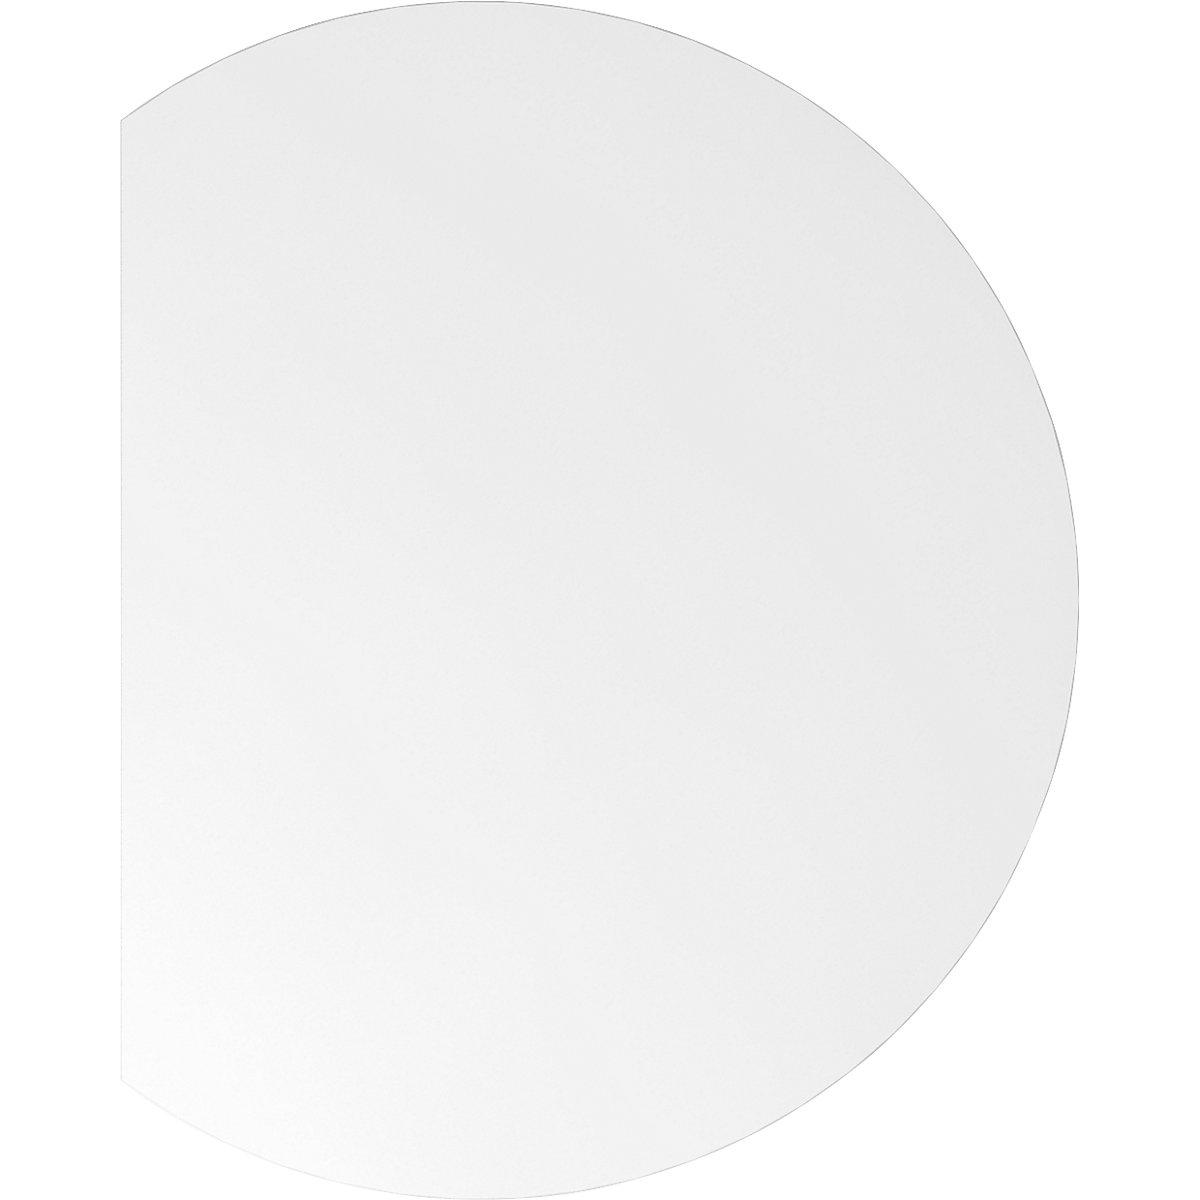 Dogradni stol VERA-ZWO, s mogućnošću namještanja visine, ŠxD 800 x 1000 mm, ploča u bijeloj boji, postolje u aluminij srebrnoj boji-6